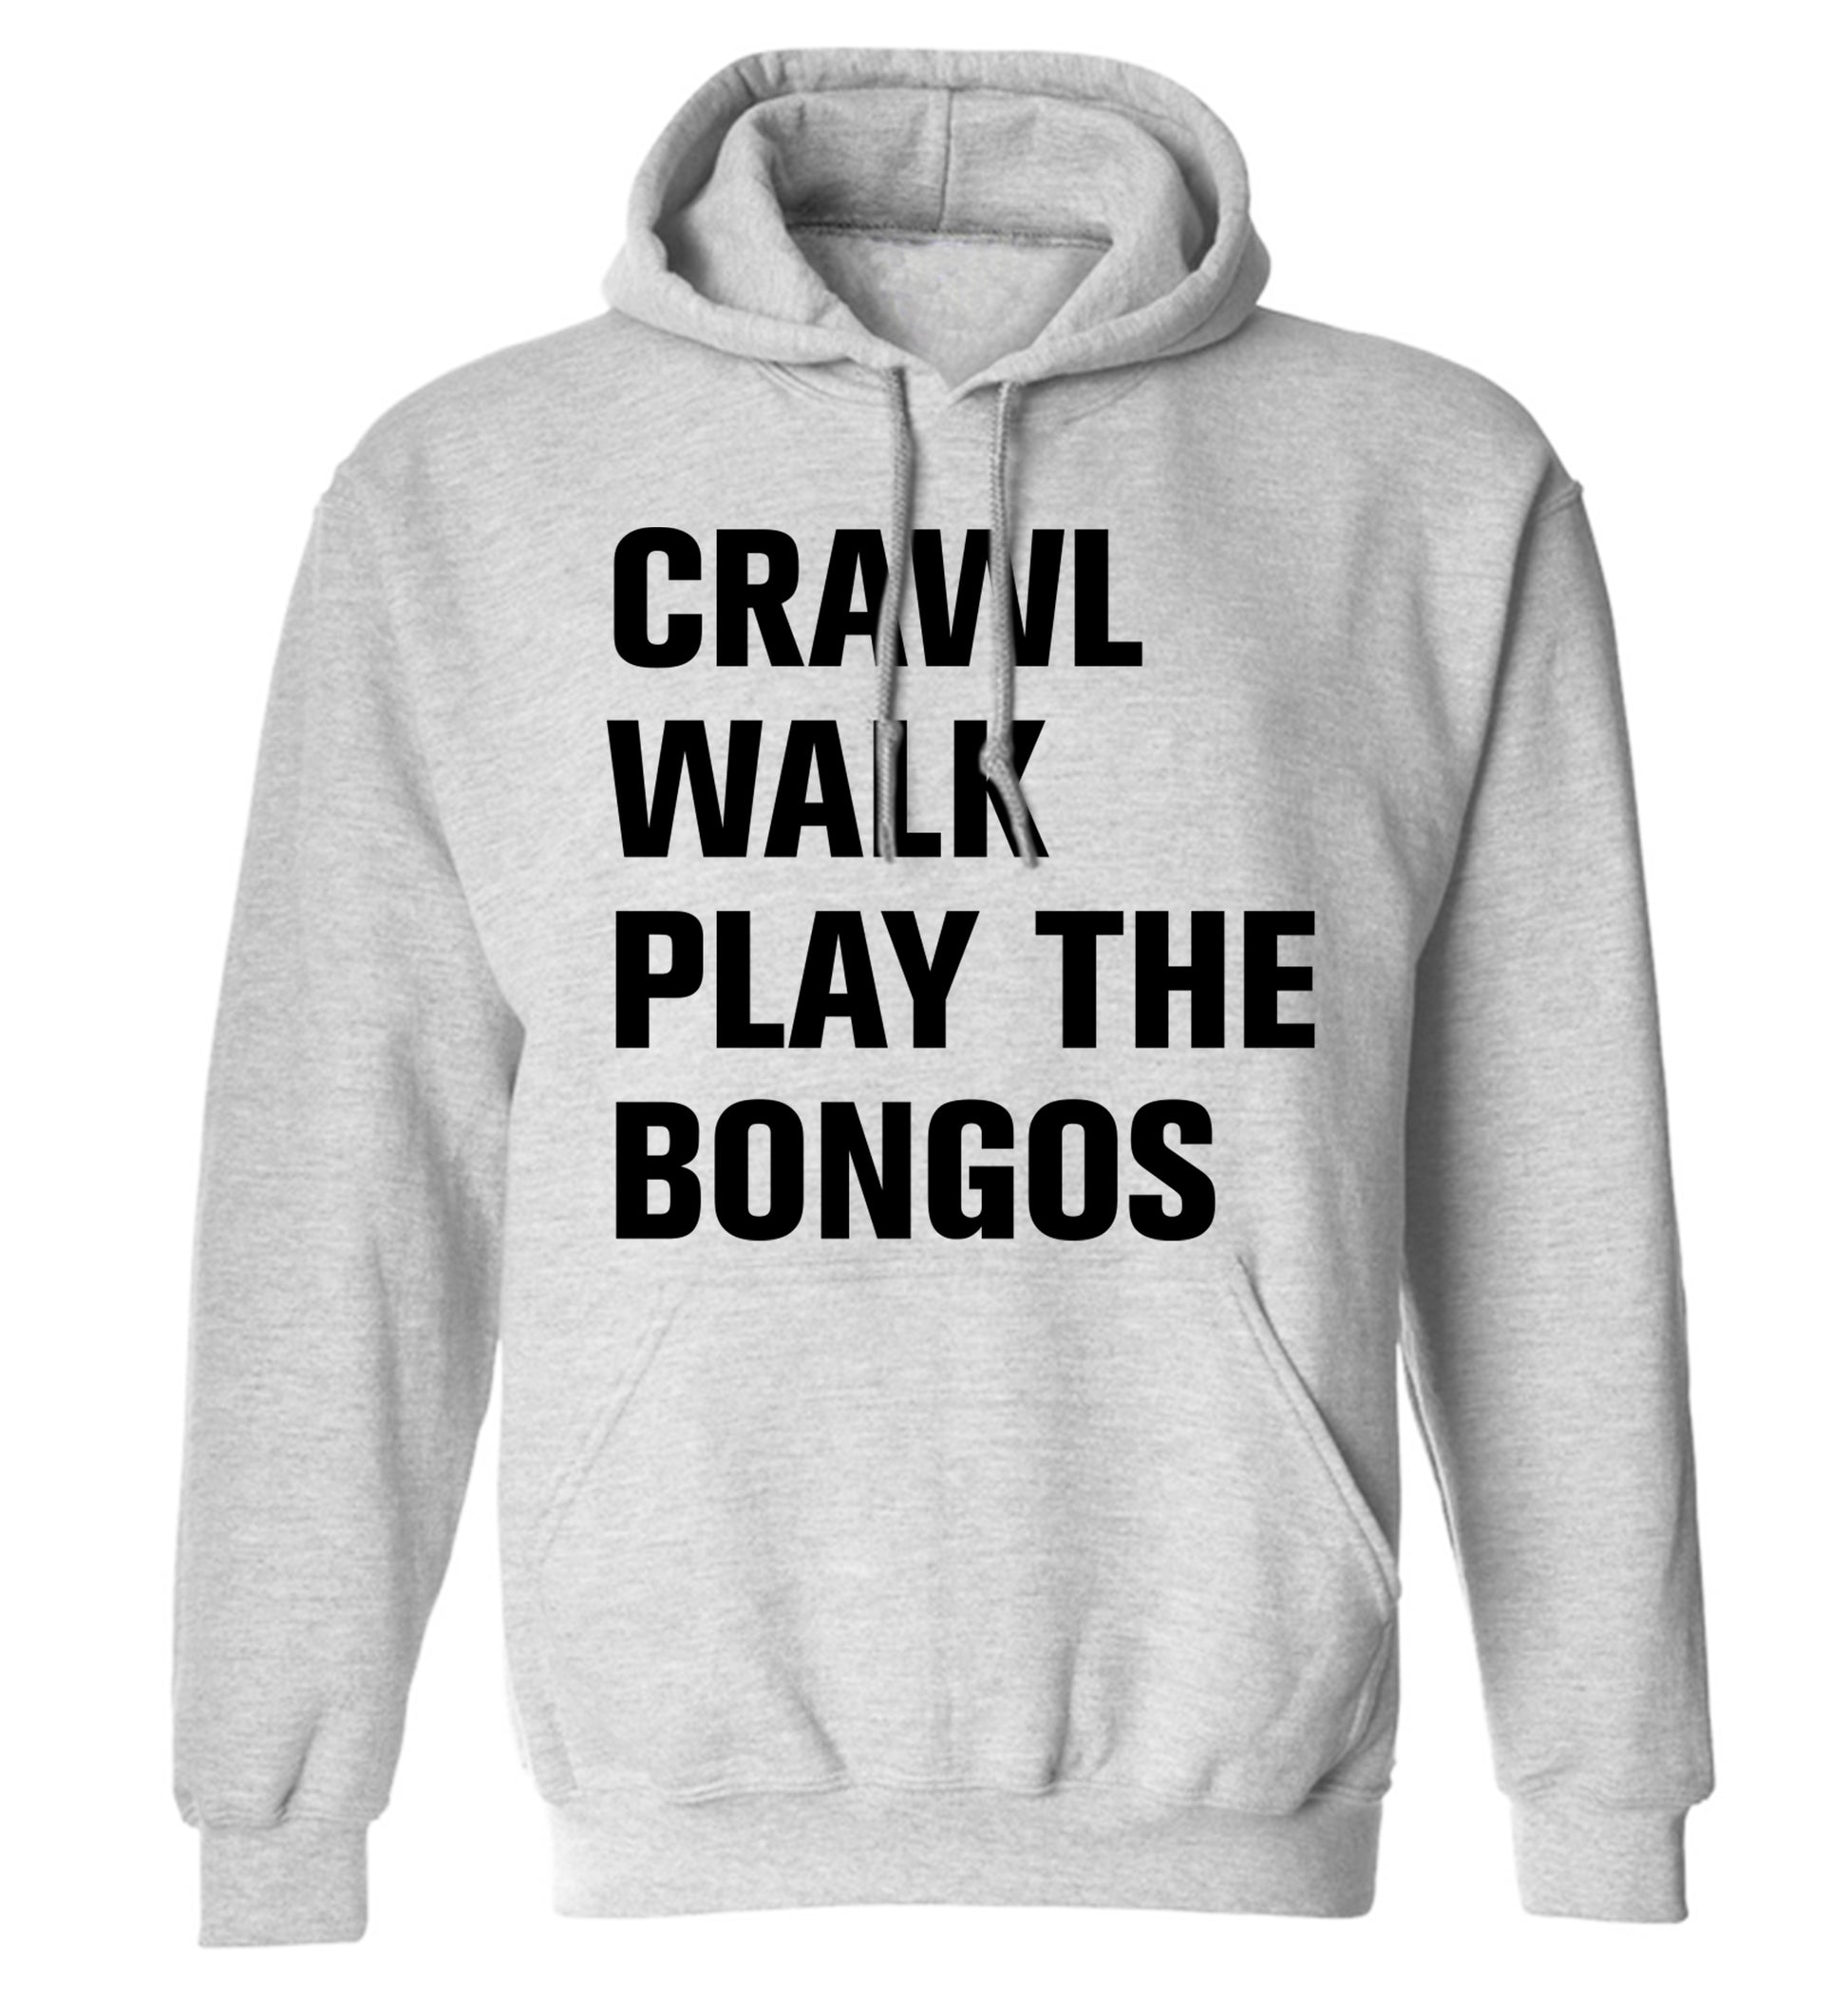 Crawl Walk Play Bongos adults unisex grey hoodie 2XL